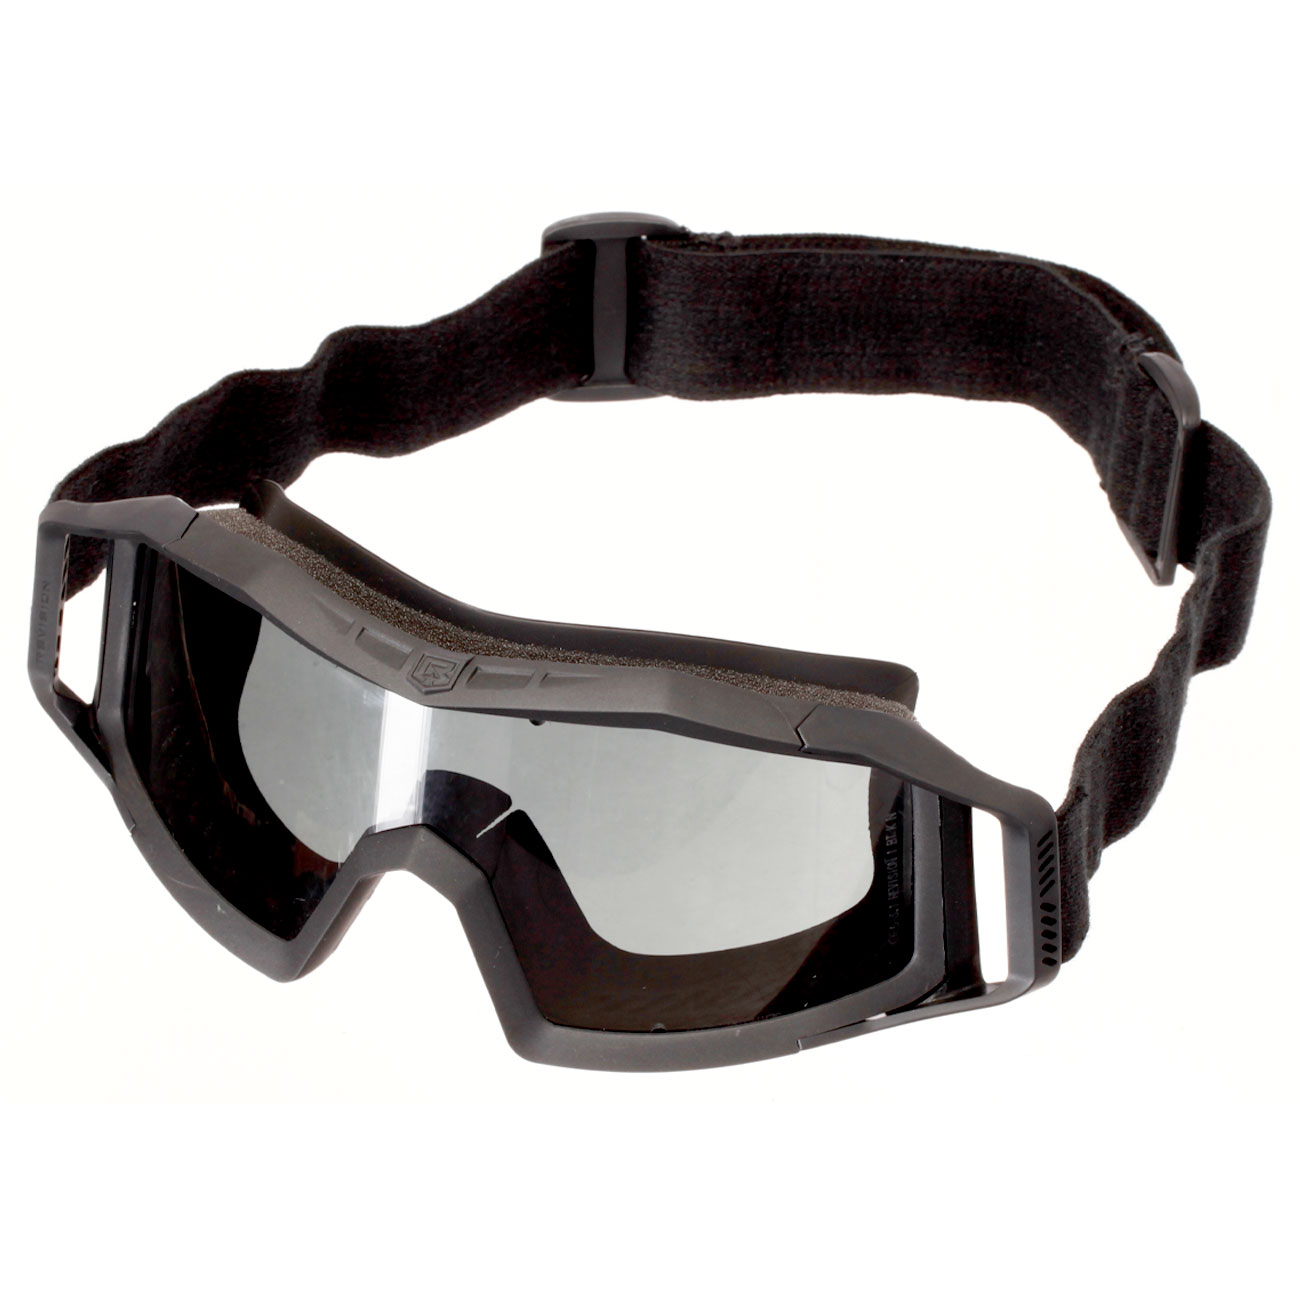 Revision Eyewear Wolfspider Schutzbrille Deluxe Kit mit vermillion / klar / rauch Wechselglser schwarz Bild 1